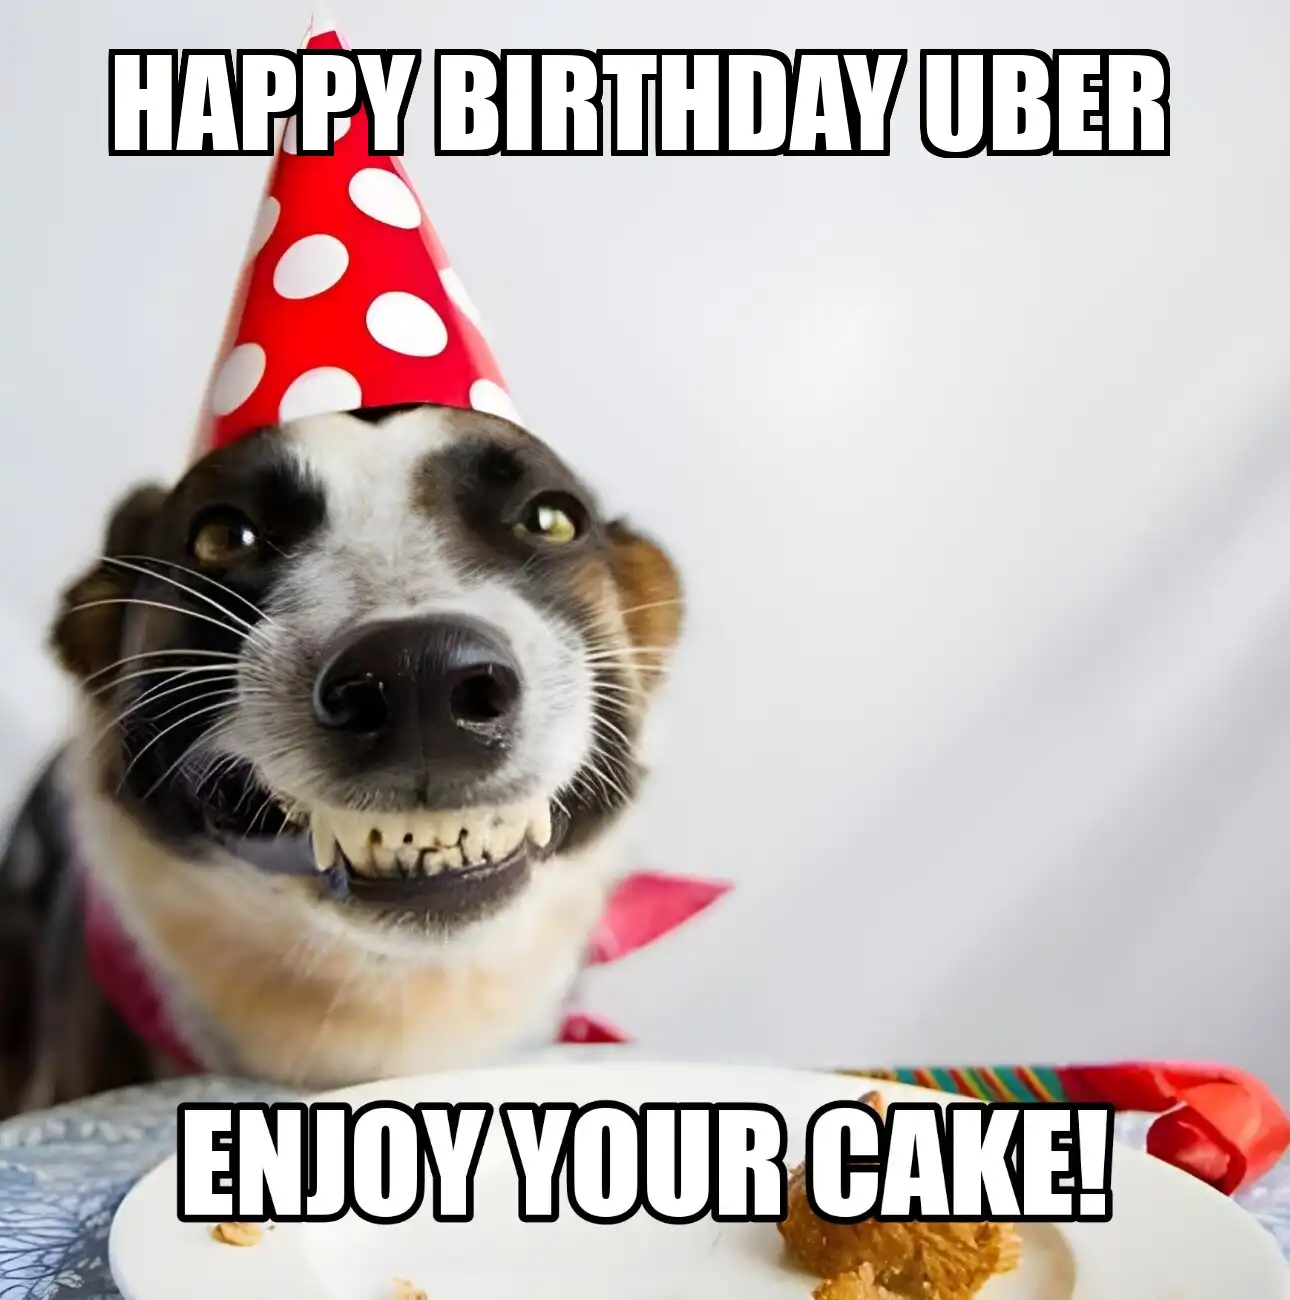 Happy Birthday Uber Enjoy Your Cake Dog Meme